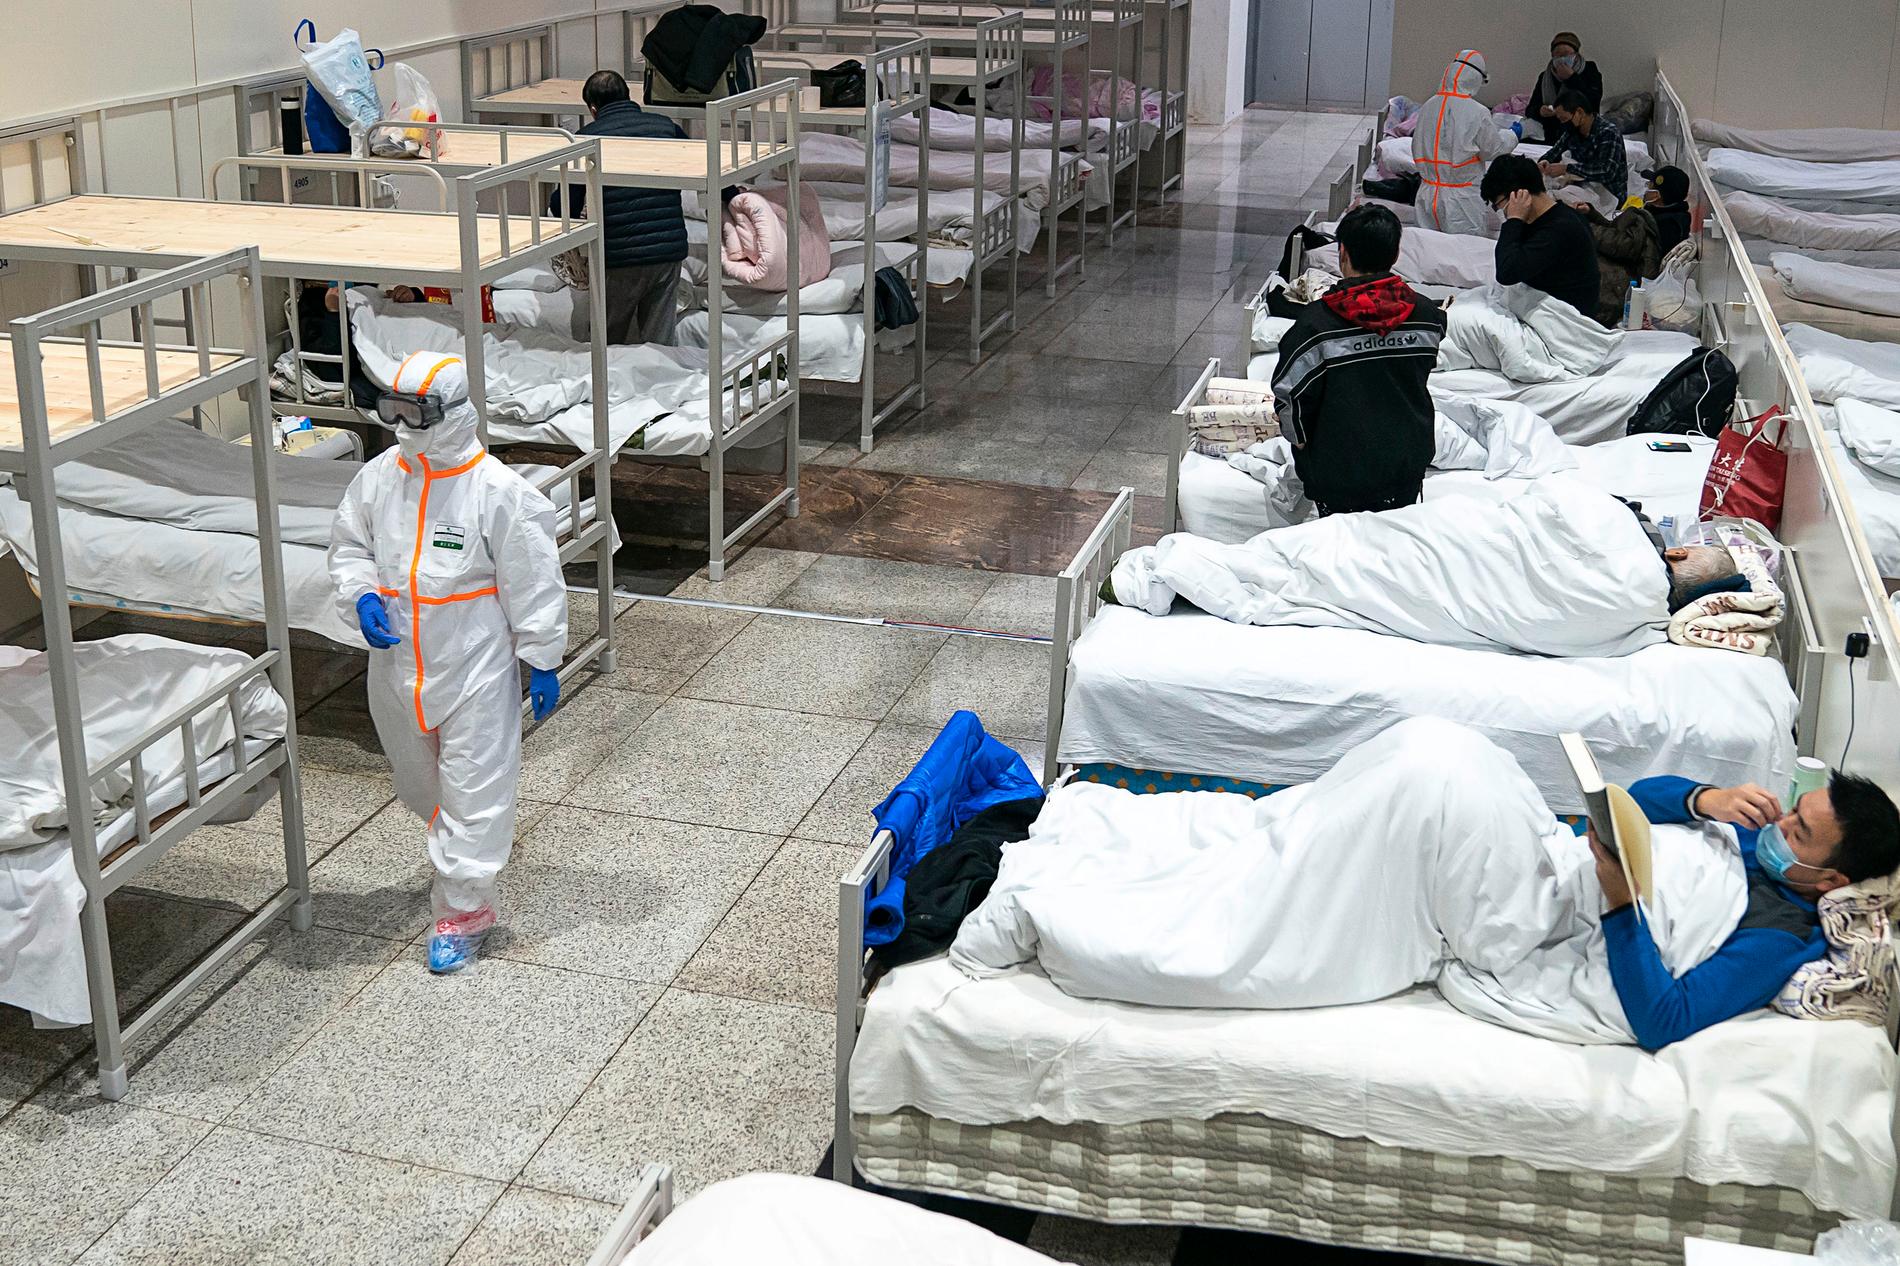 En sjukvårdsarbetare i skyddsdräkt går förbi patienter smittade med det nya coronaviruset i en utställningslokal som gjorts om till sjukhus i Wuhan i Kinas värst drabbade provins Hubei på onsdagen.